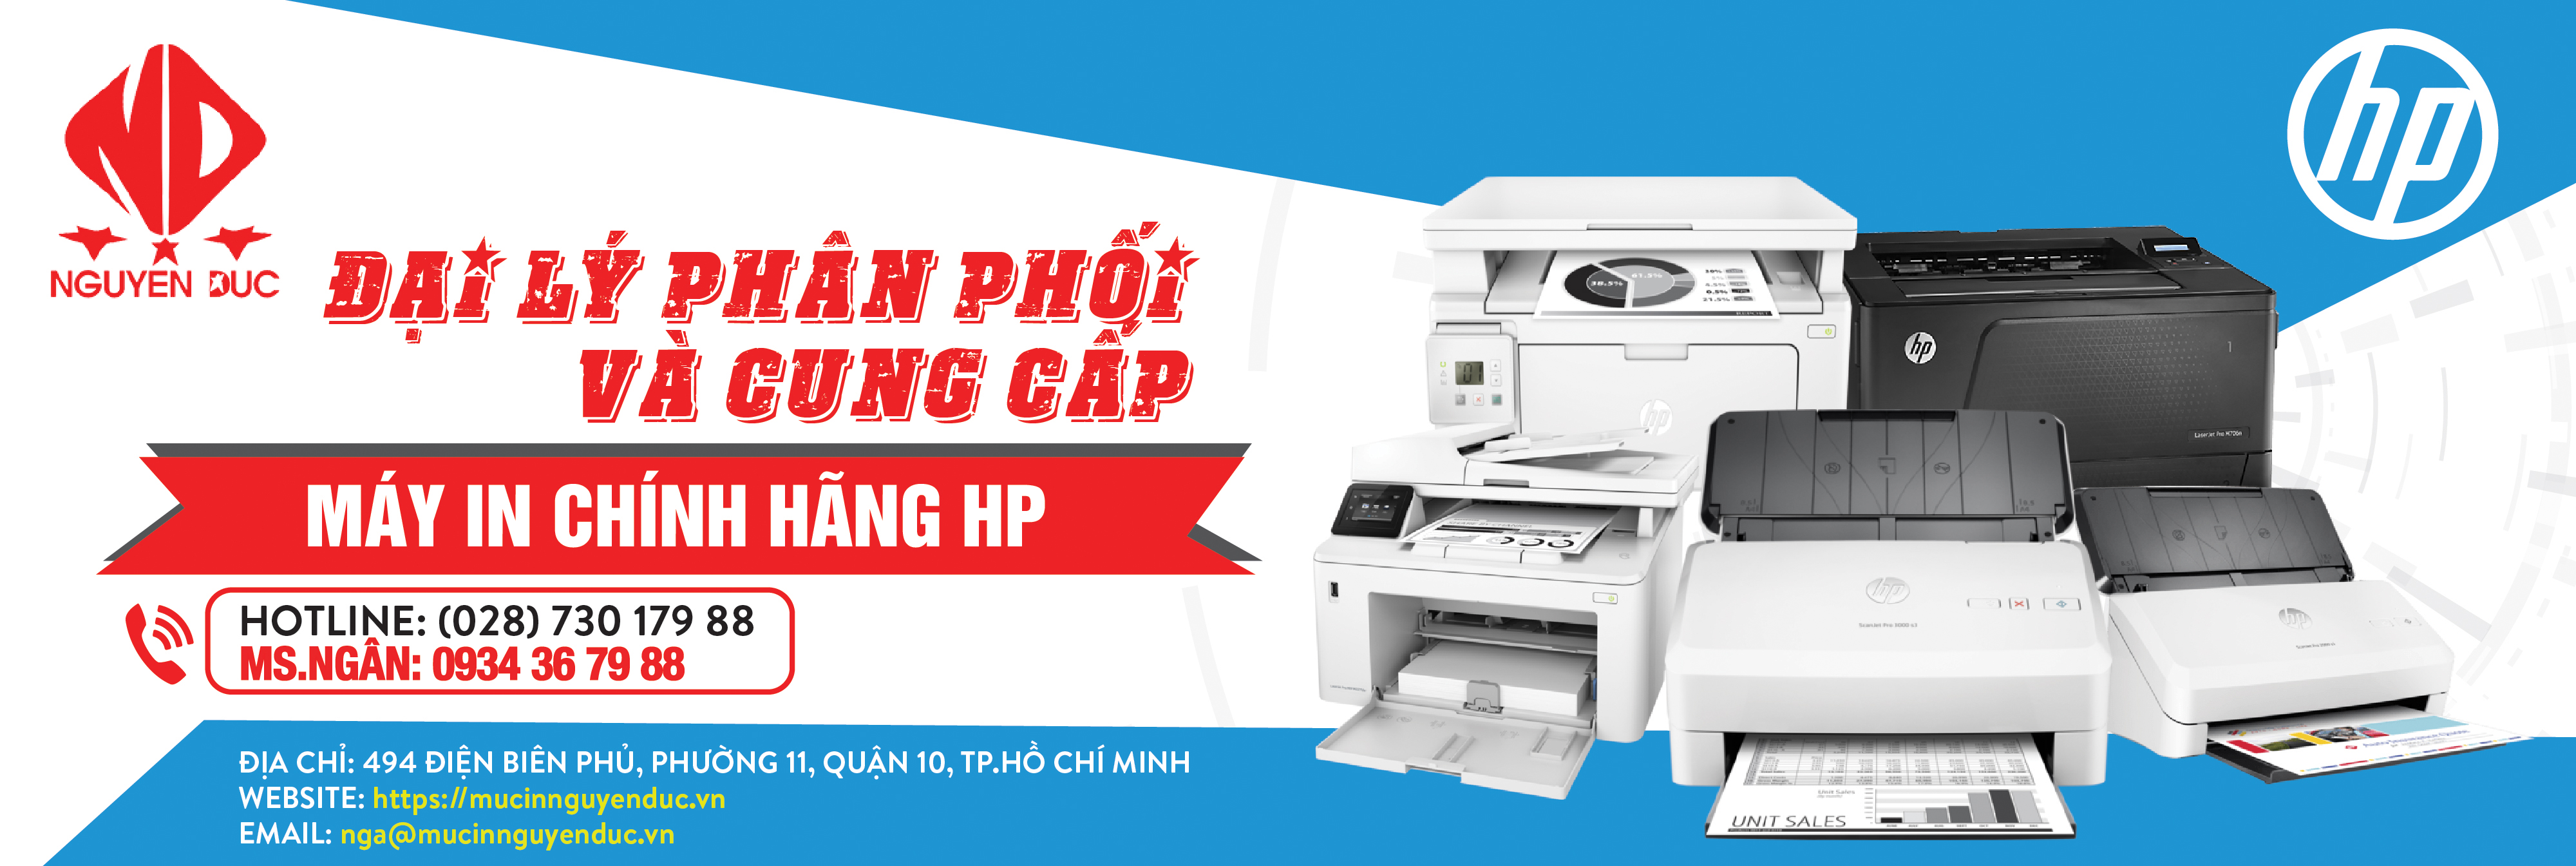 Đại lý phân phối máy quét tài liệu đảo mặt Epson WorkForce DS-570WII - chính hãng, giao hàng tại huyện Cần Giờ, thành phố Hồ Chí Minh